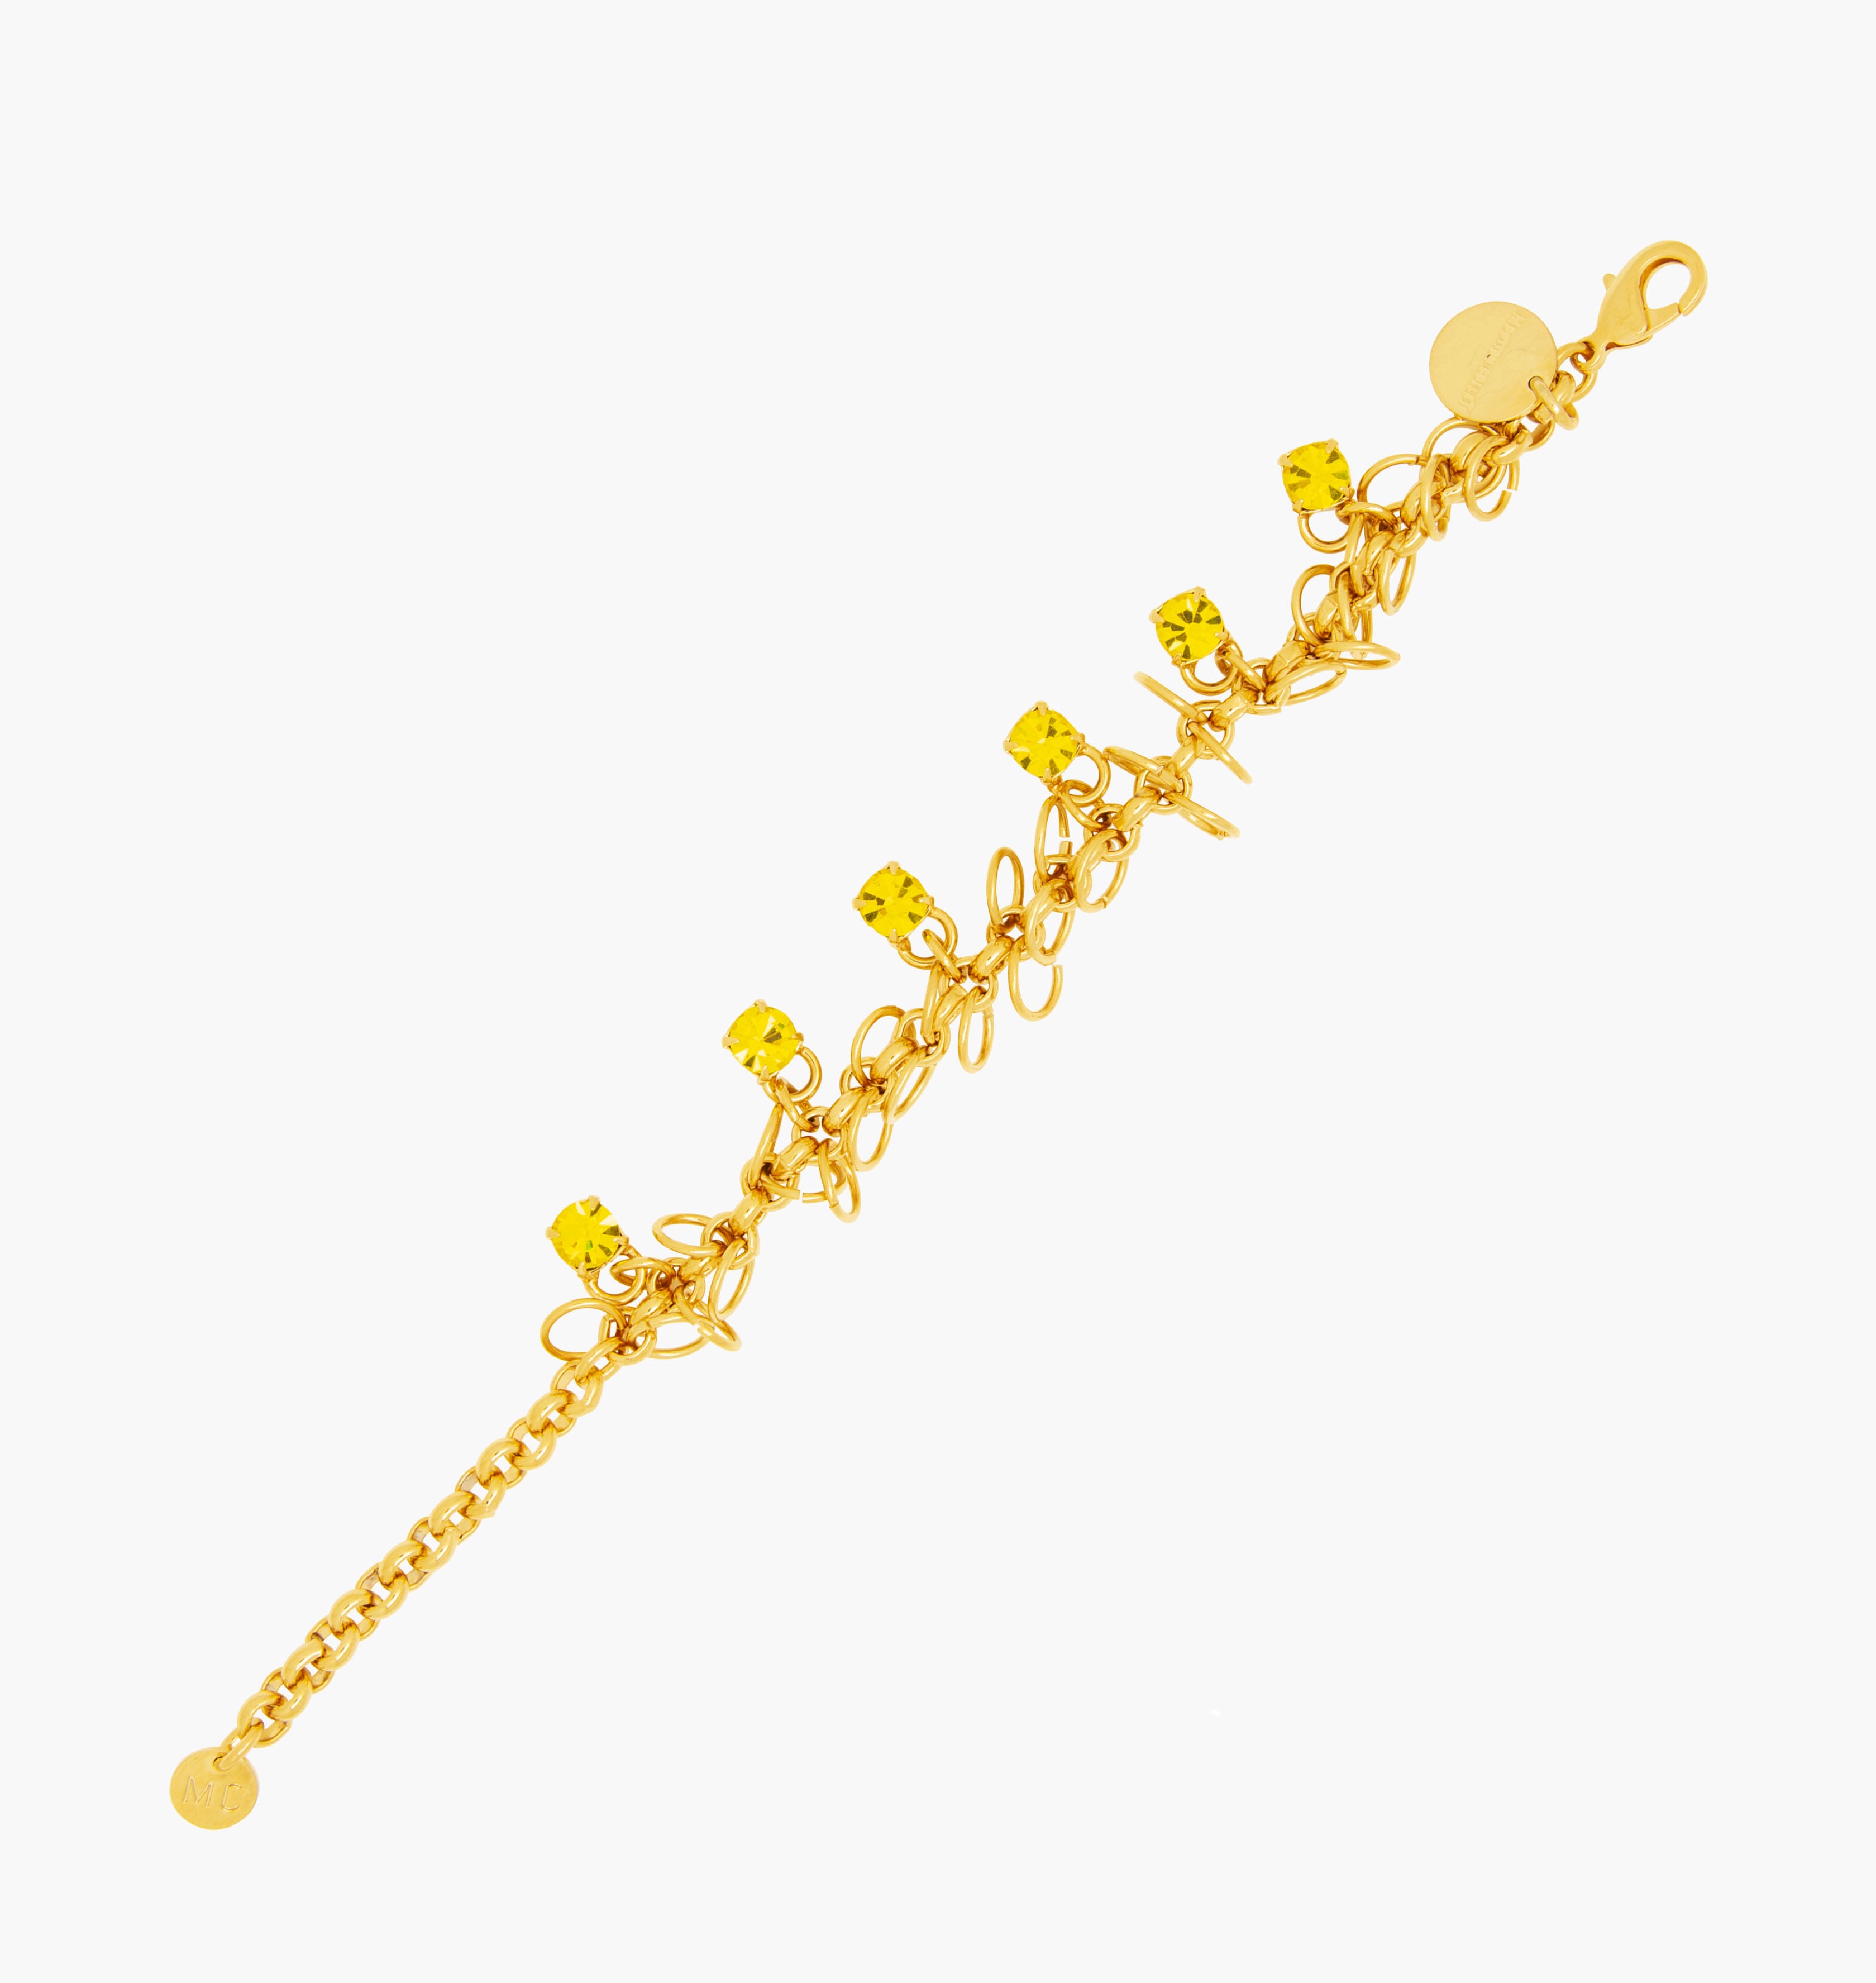 Bracelet STARS Citrine - shop.mouttoncollet.com, Moutton colleT, Notre bracelet STARS est réalisé en bronze dorées à l'or fin, serties de cristaux scintillants coloris jaune citrine avec de grands anneaux. Il est orné d'un médaillon gravé "Moutton colleT" et d'un petit logo gravé "MC". Il sera assez discret pour être associé à vos tenues du quotidien, strass cristal swarovski, moutton collet, bijoux jaune et or doré,